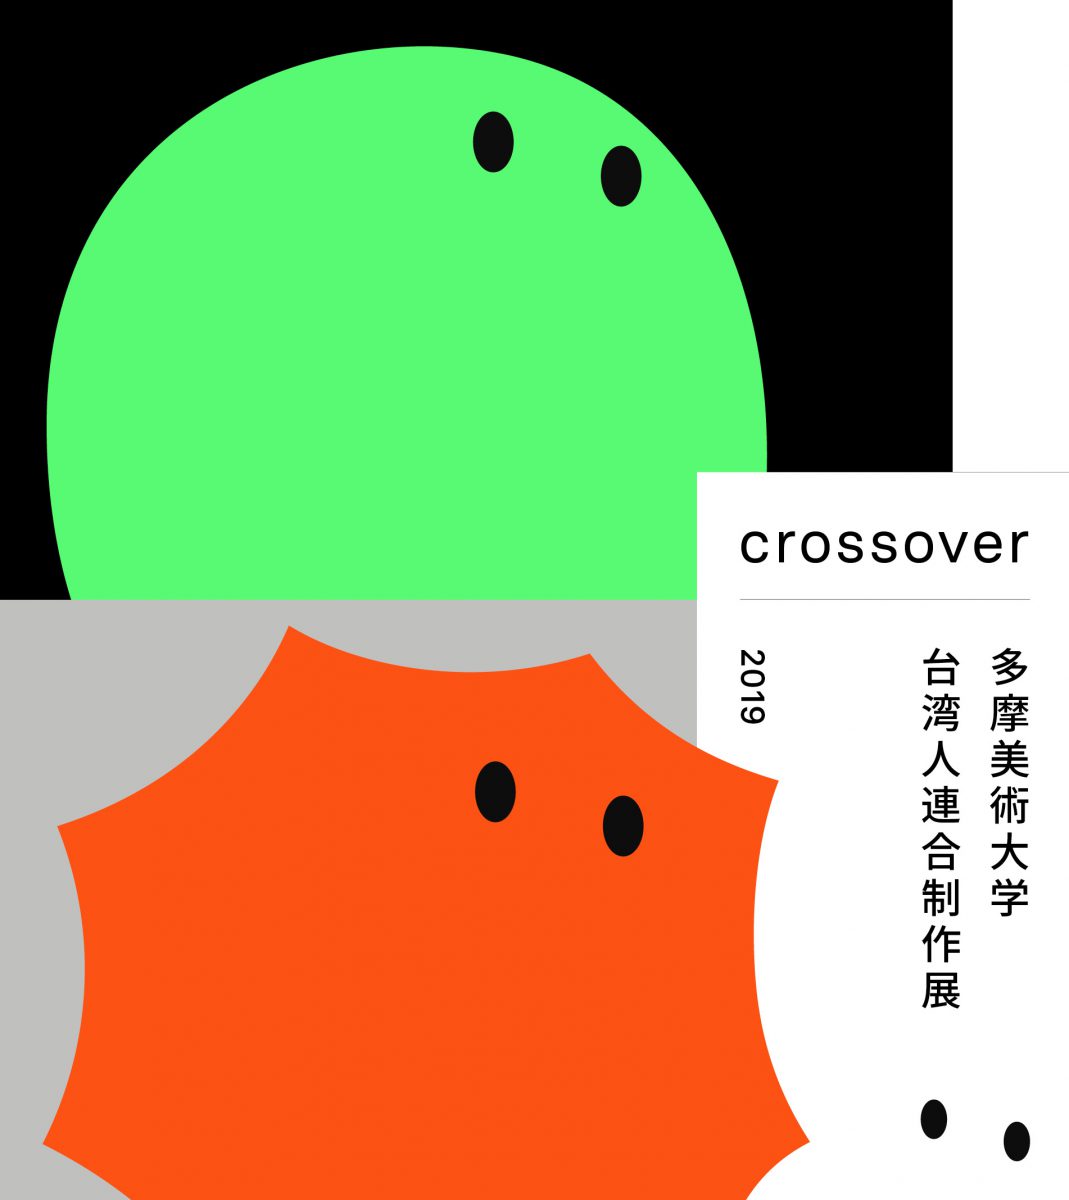 【多摩美術大学 台湾人連合制作展2019「Crossover」】